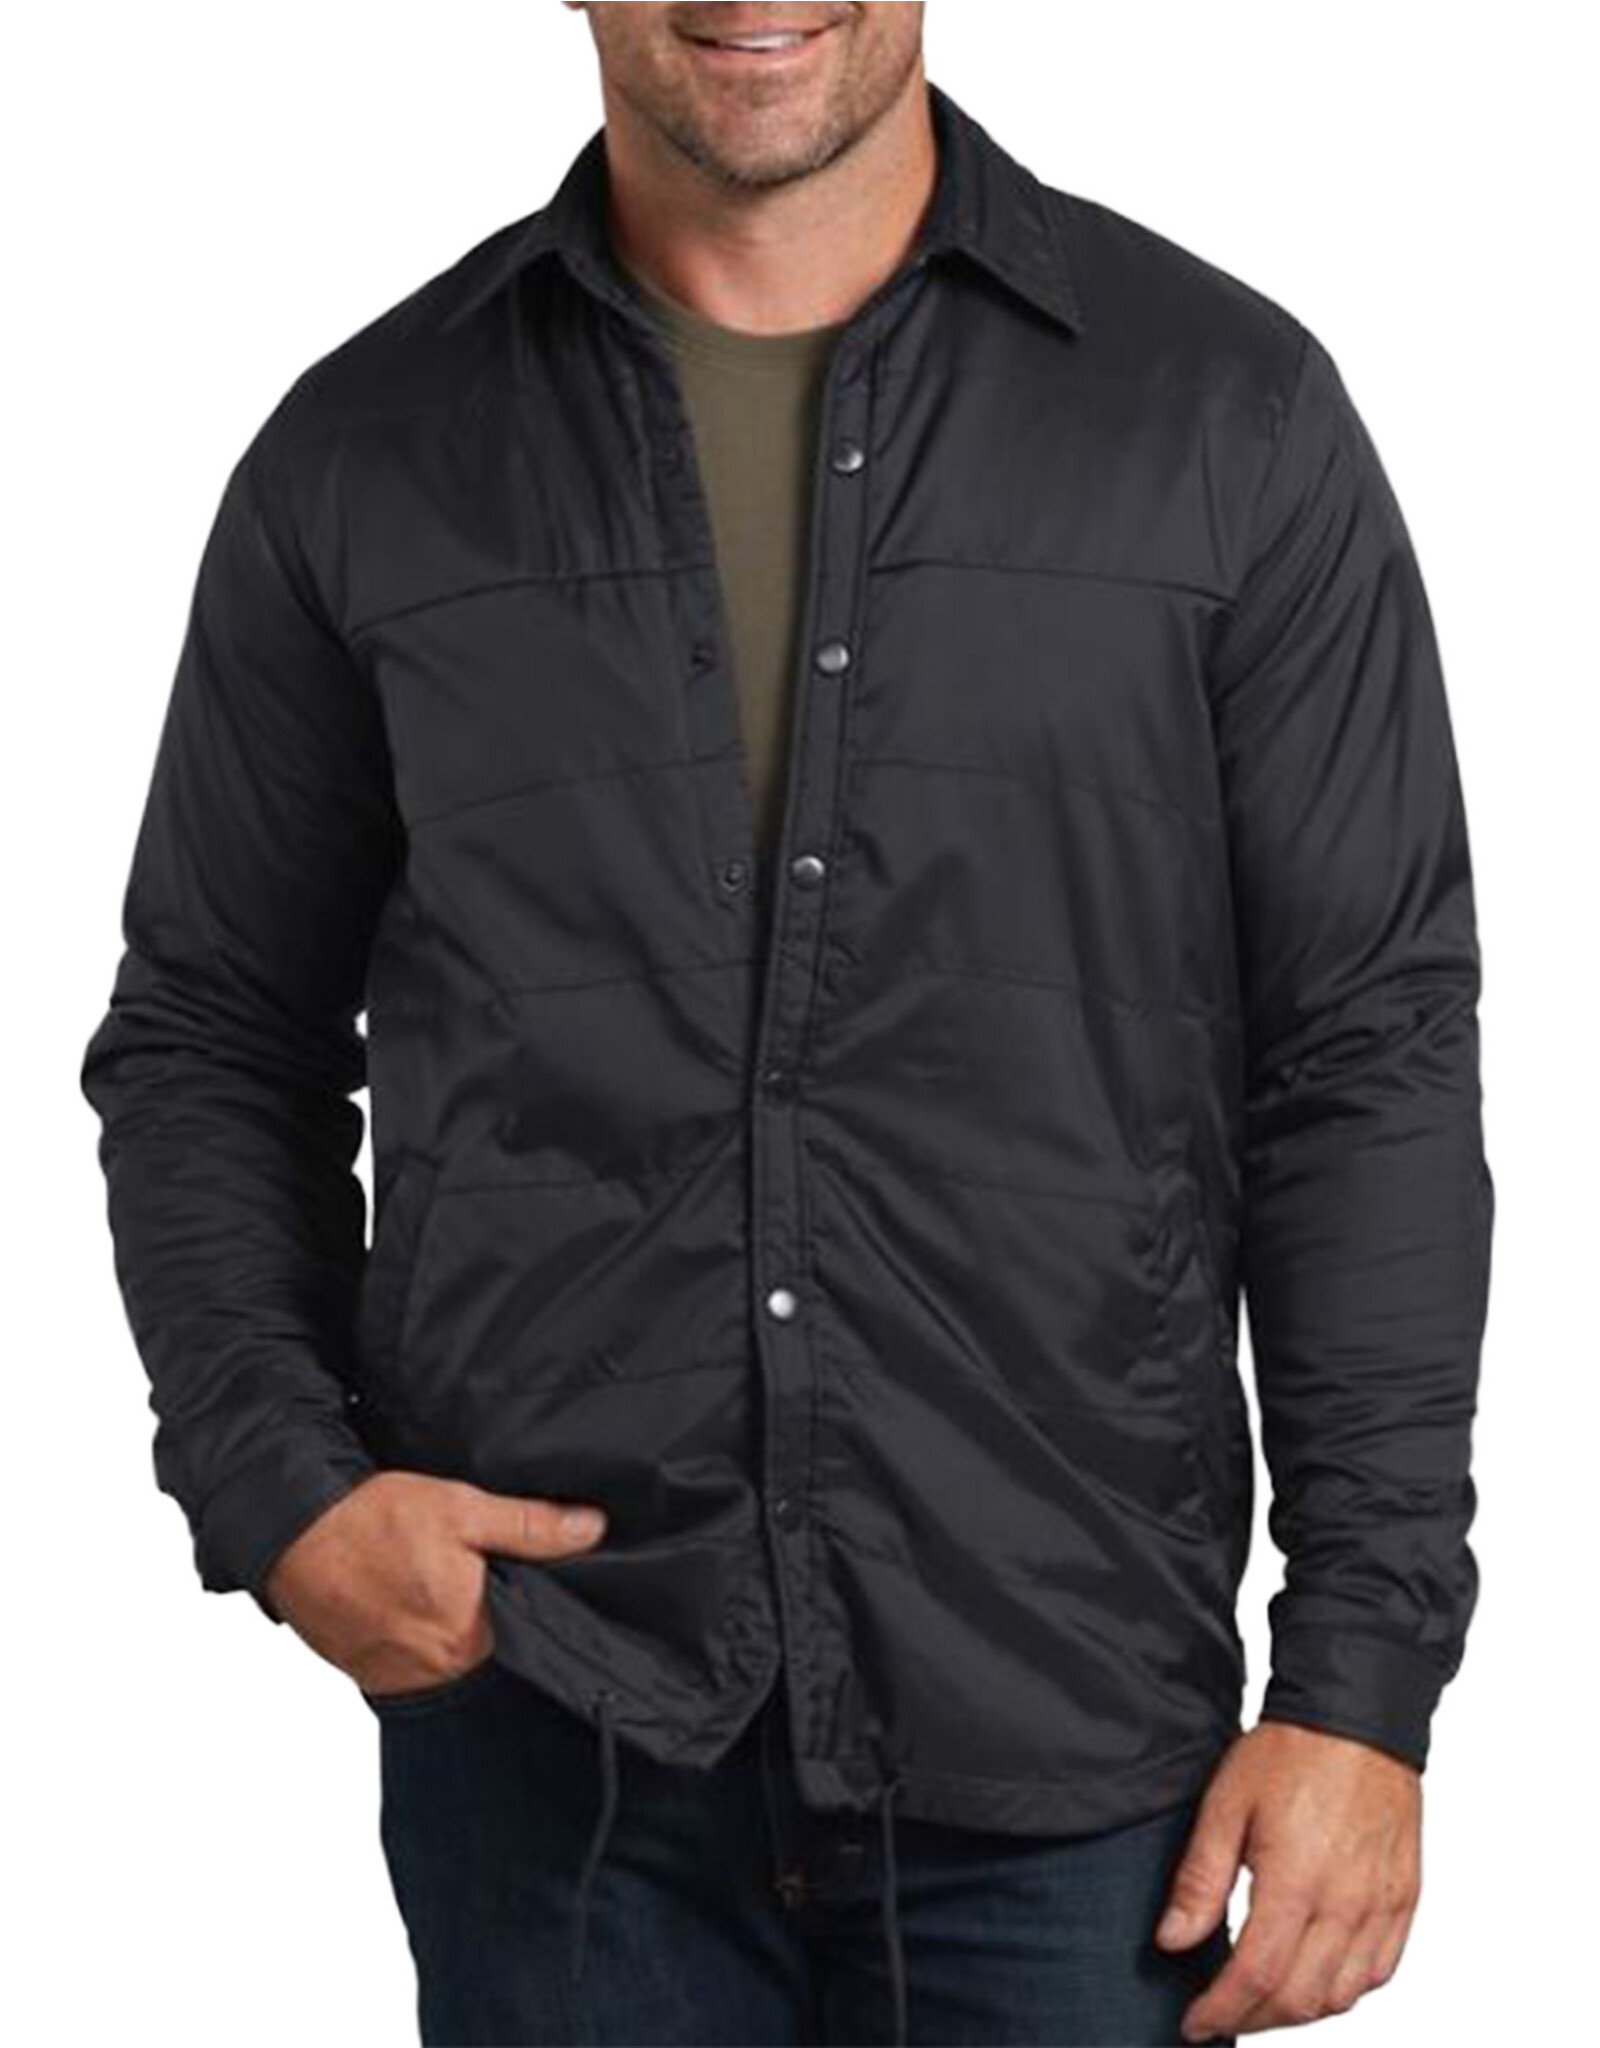 DICKIES Men's Nylon Shirt Jacket Black - TJ243BK